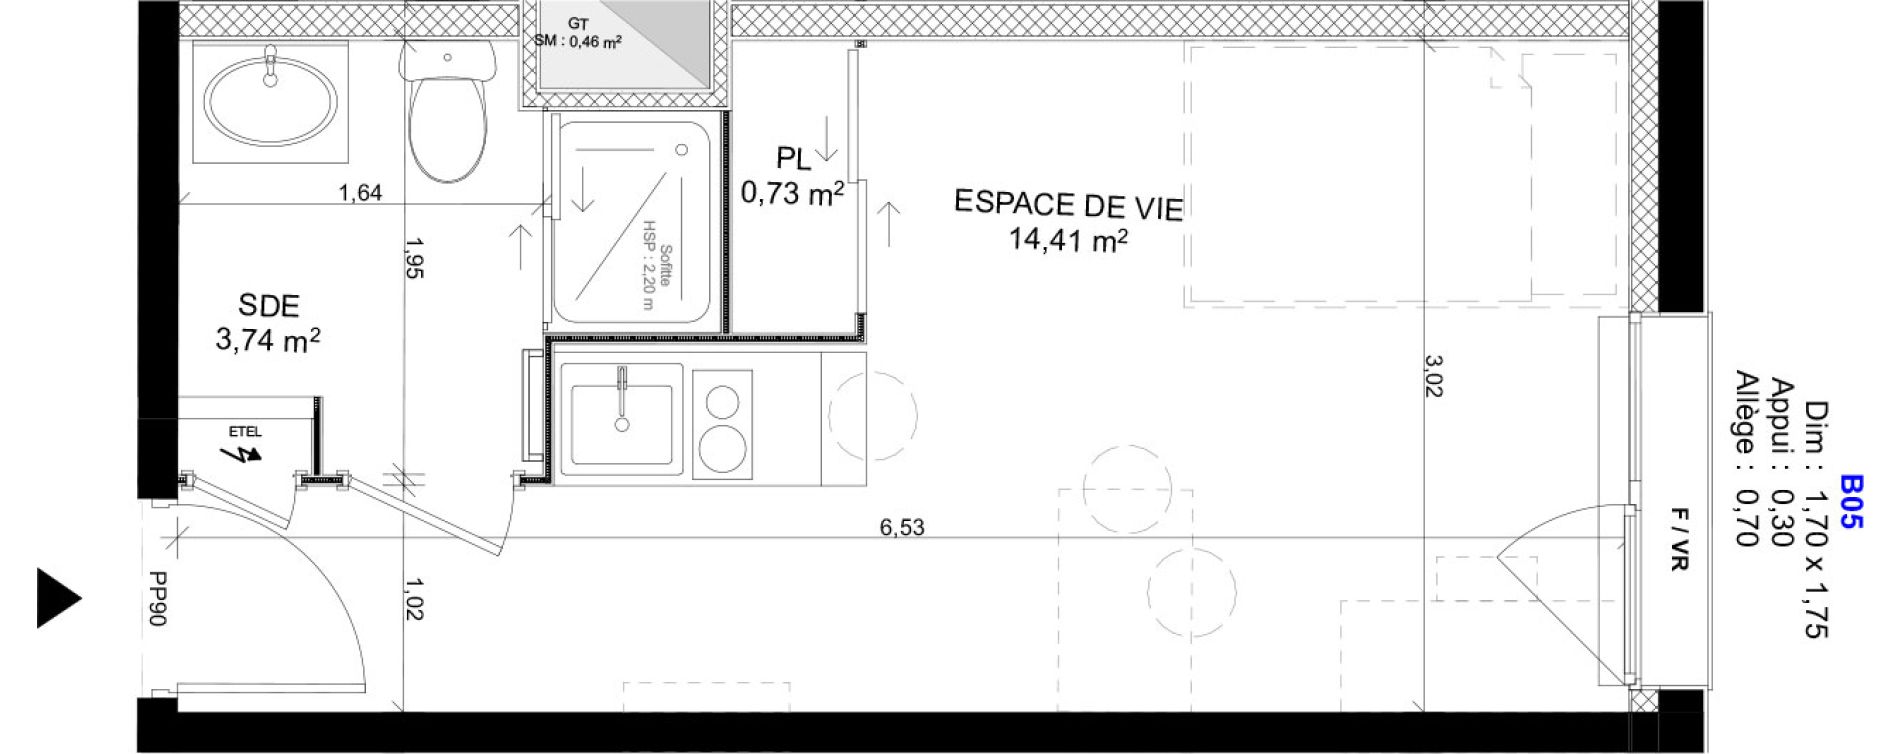 Appartement T1 meubl&eacute; de 18,88 m2 au Havre Sainte marie - saint leon